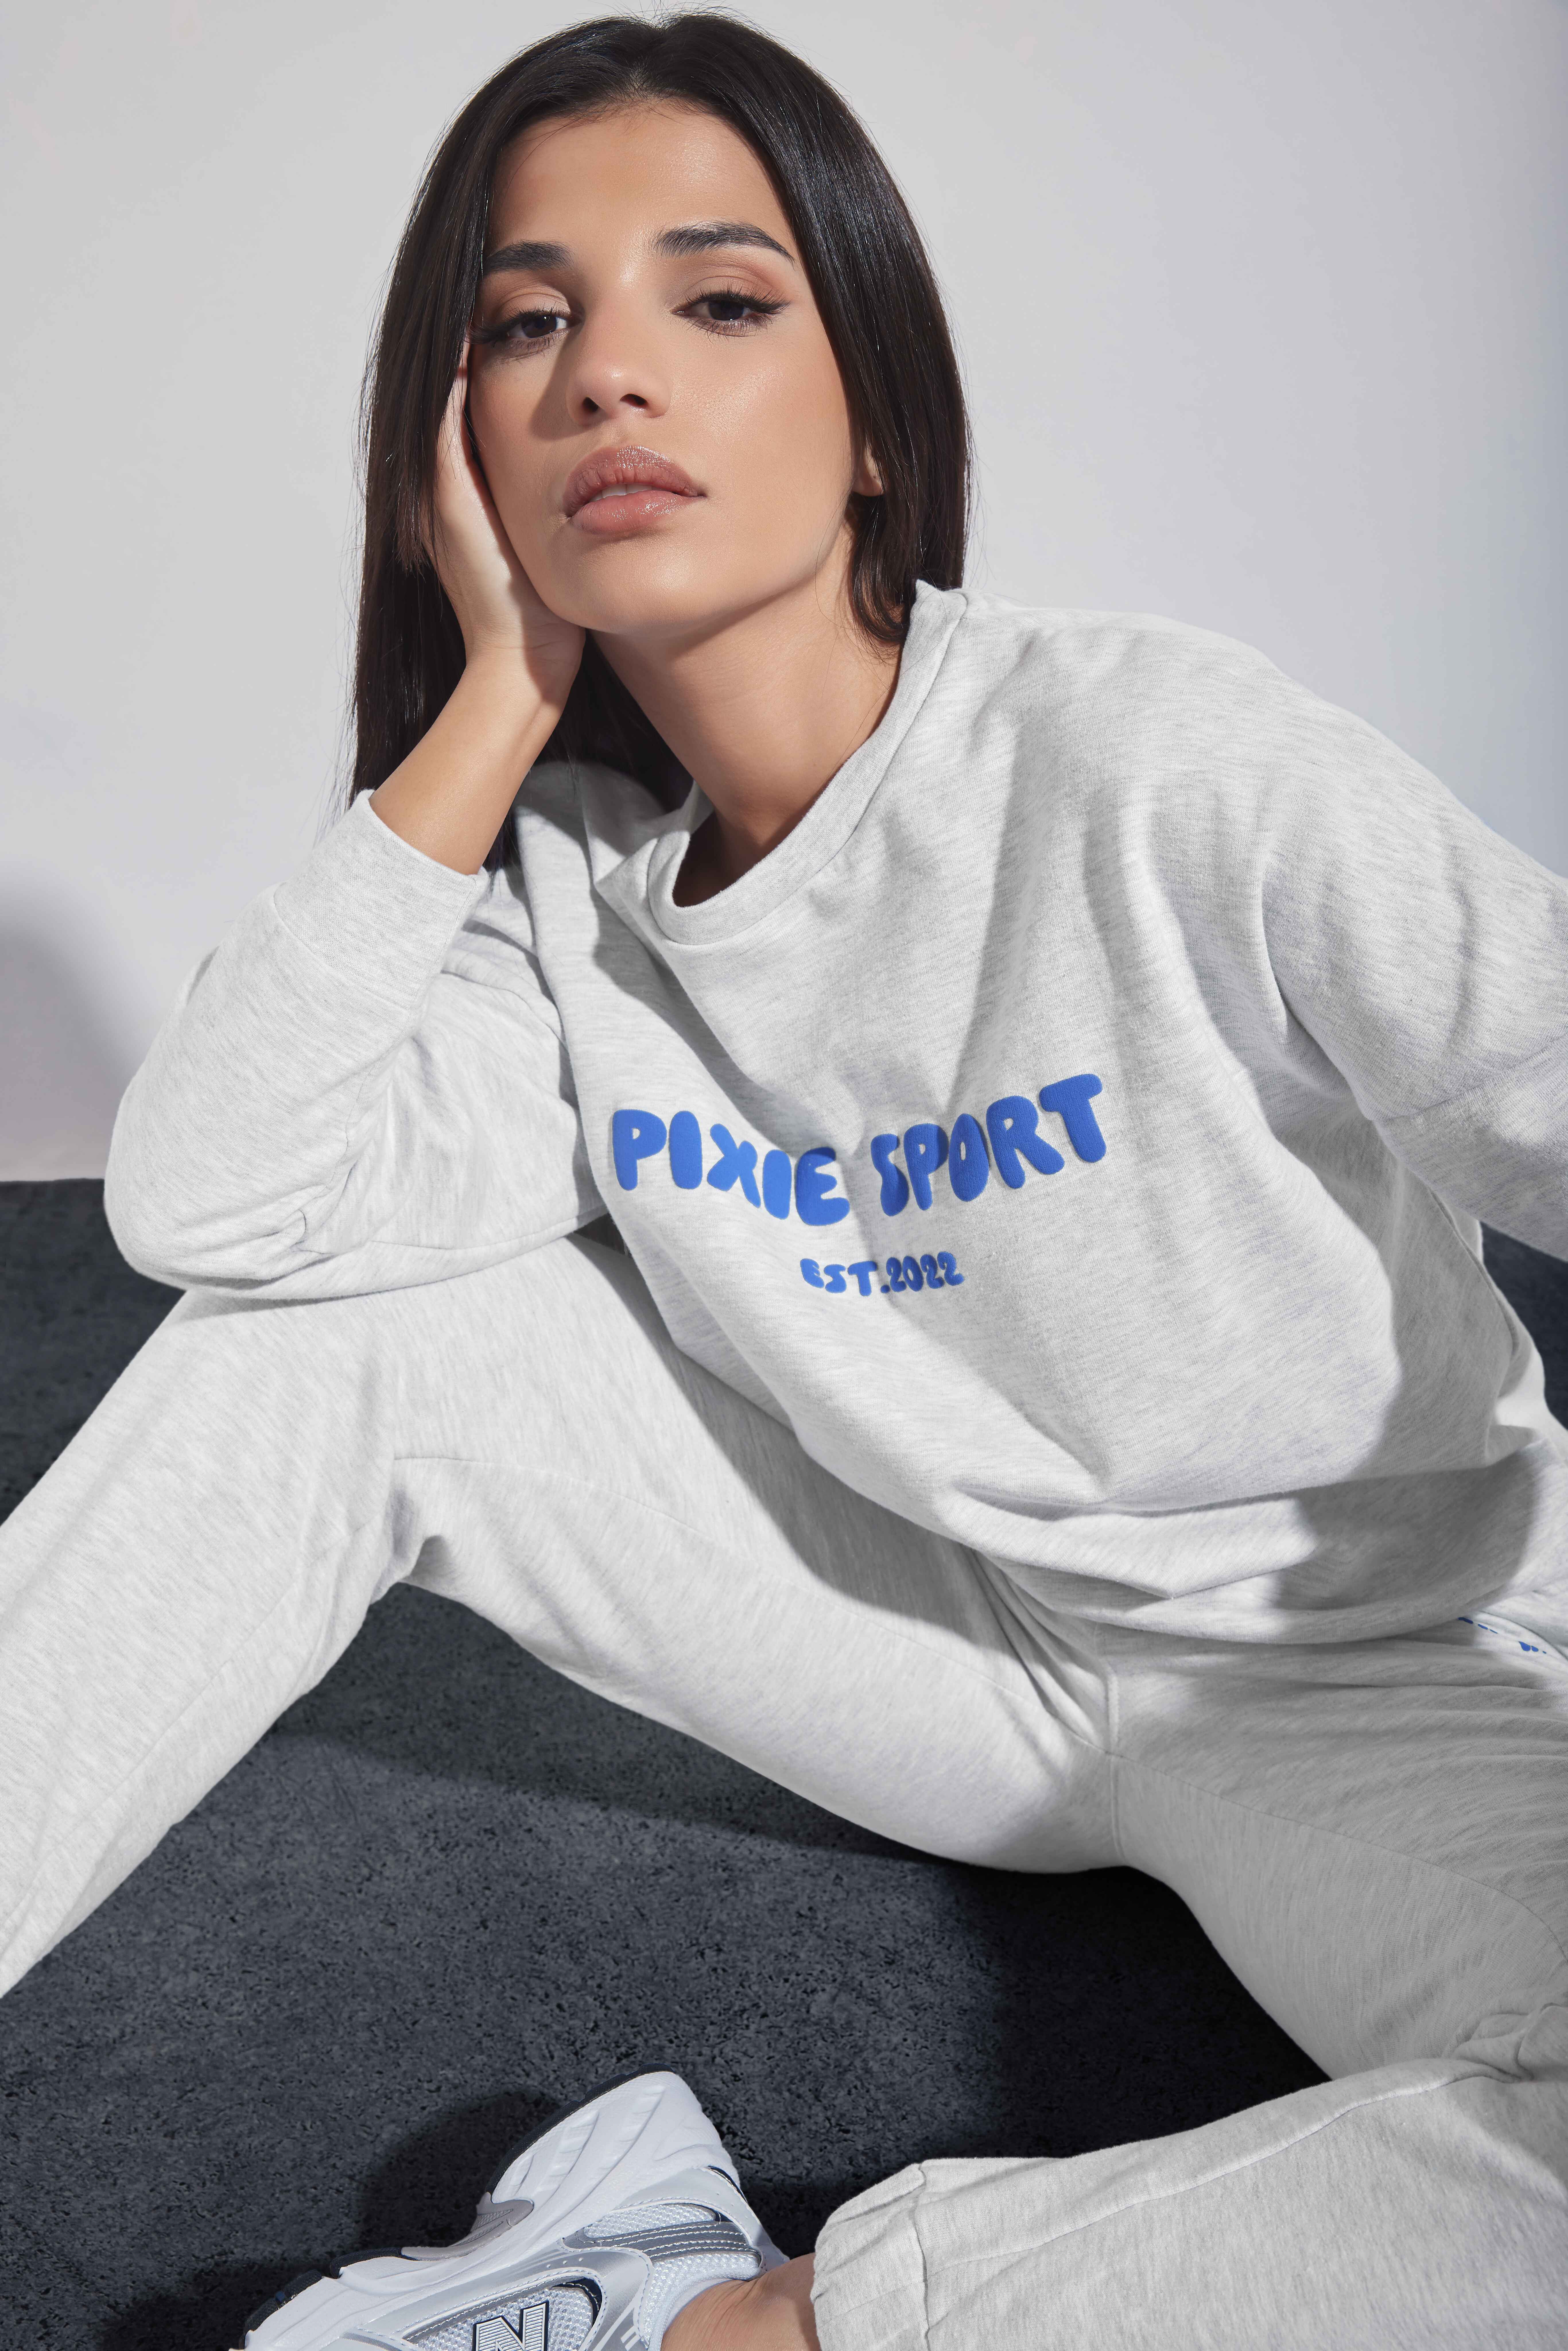 Pixiegirl Grey 'Pixie Sport' Slogan Sweatshirt 18 Pixiegirl | Petite Women's Hoodies & Sweatshirts product